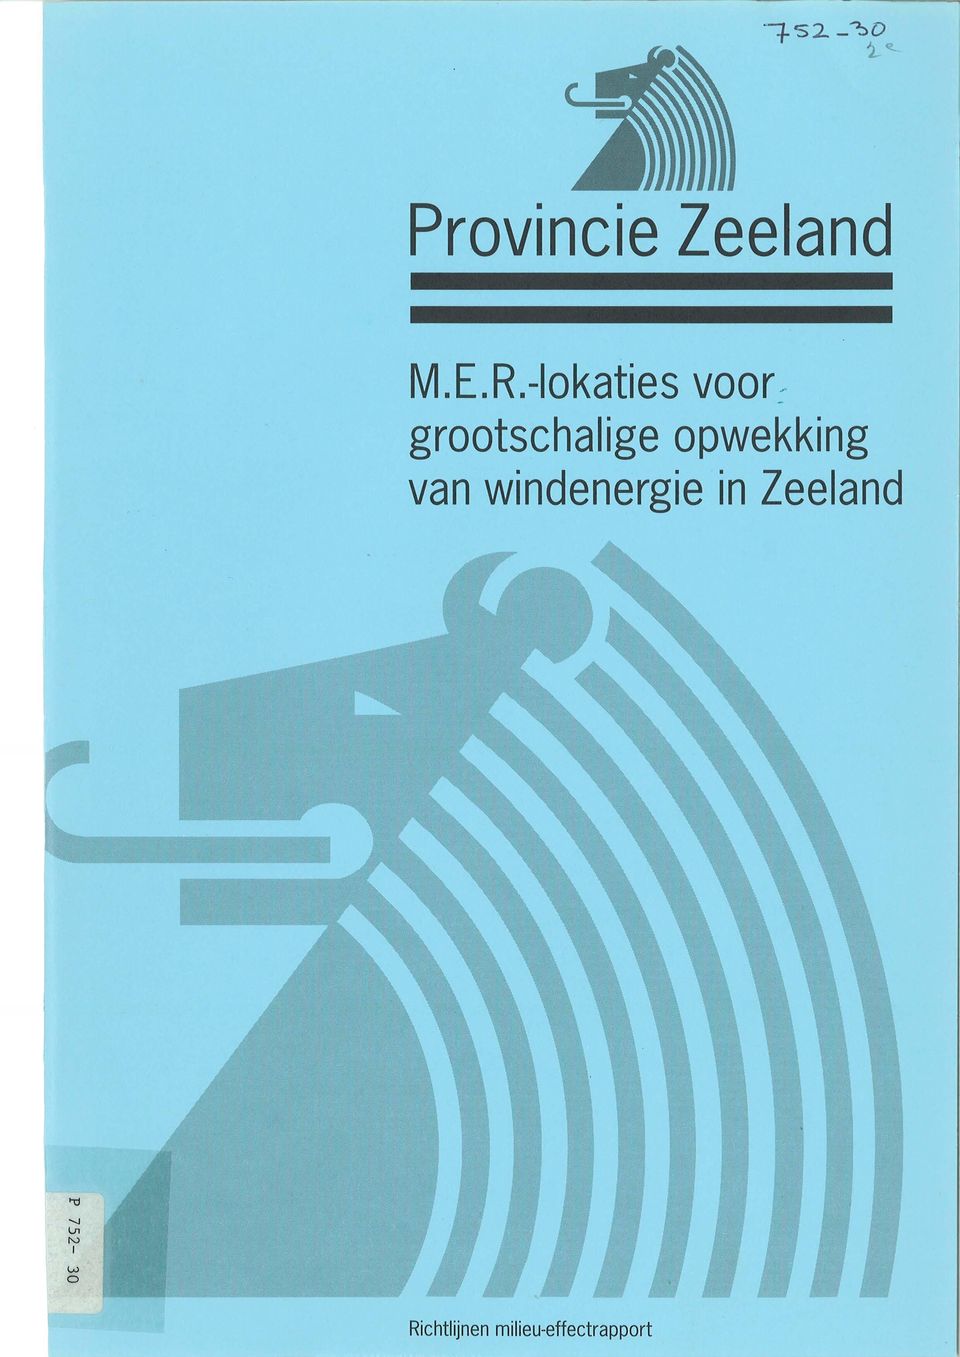 opwekking van windenergie in Zeeland